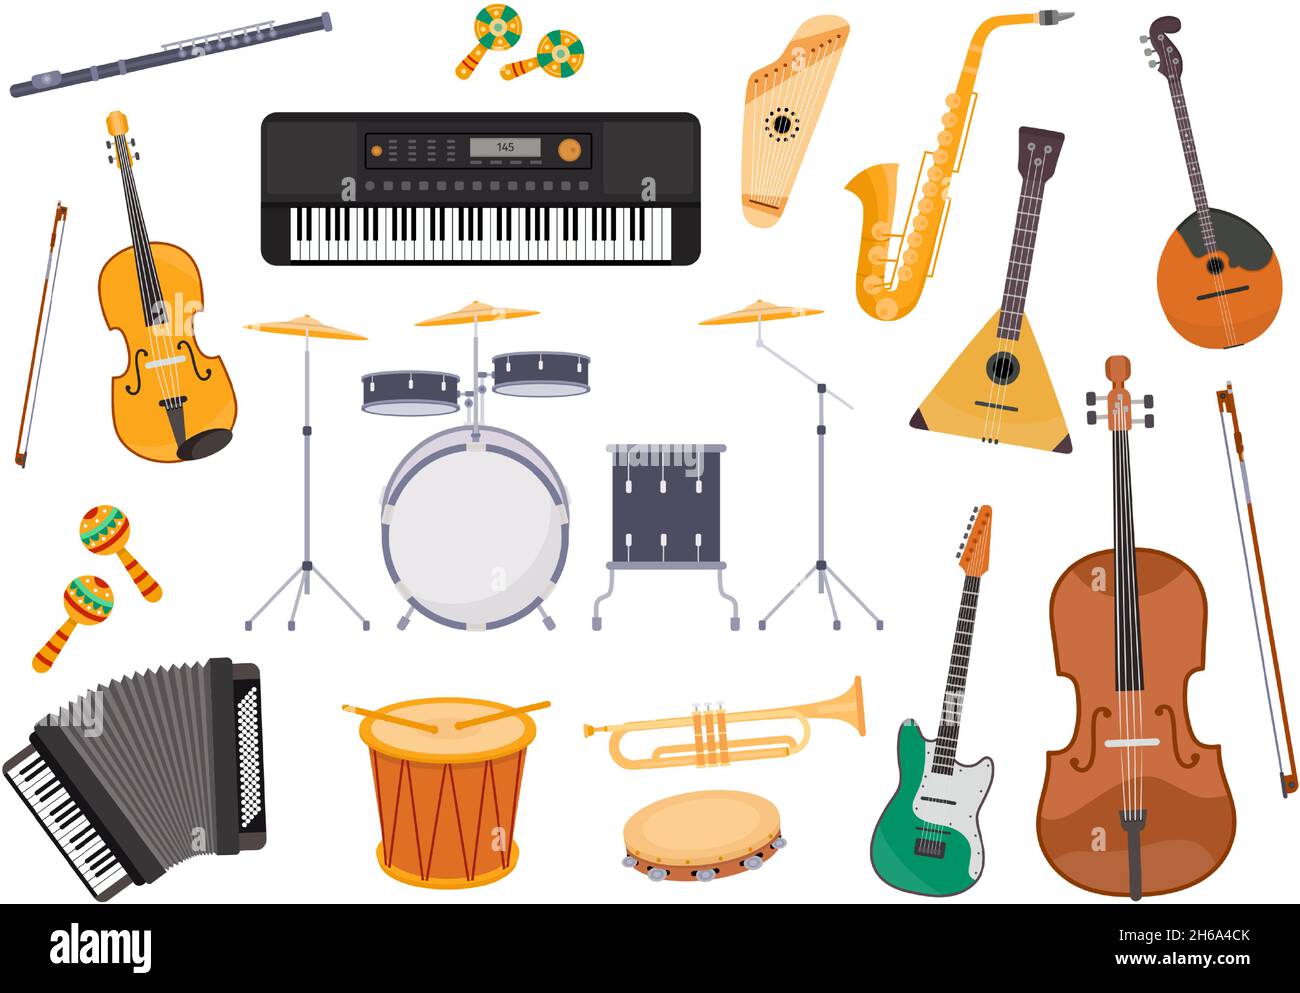 Flaches Musikinstrument, Gitarre, Akkordeon, Trommel, Saxophon und Flöte. Klassische Volksmusik Orchester, Jazz-und Rockband Ausrüstung Vektor-Set Stock Vektor